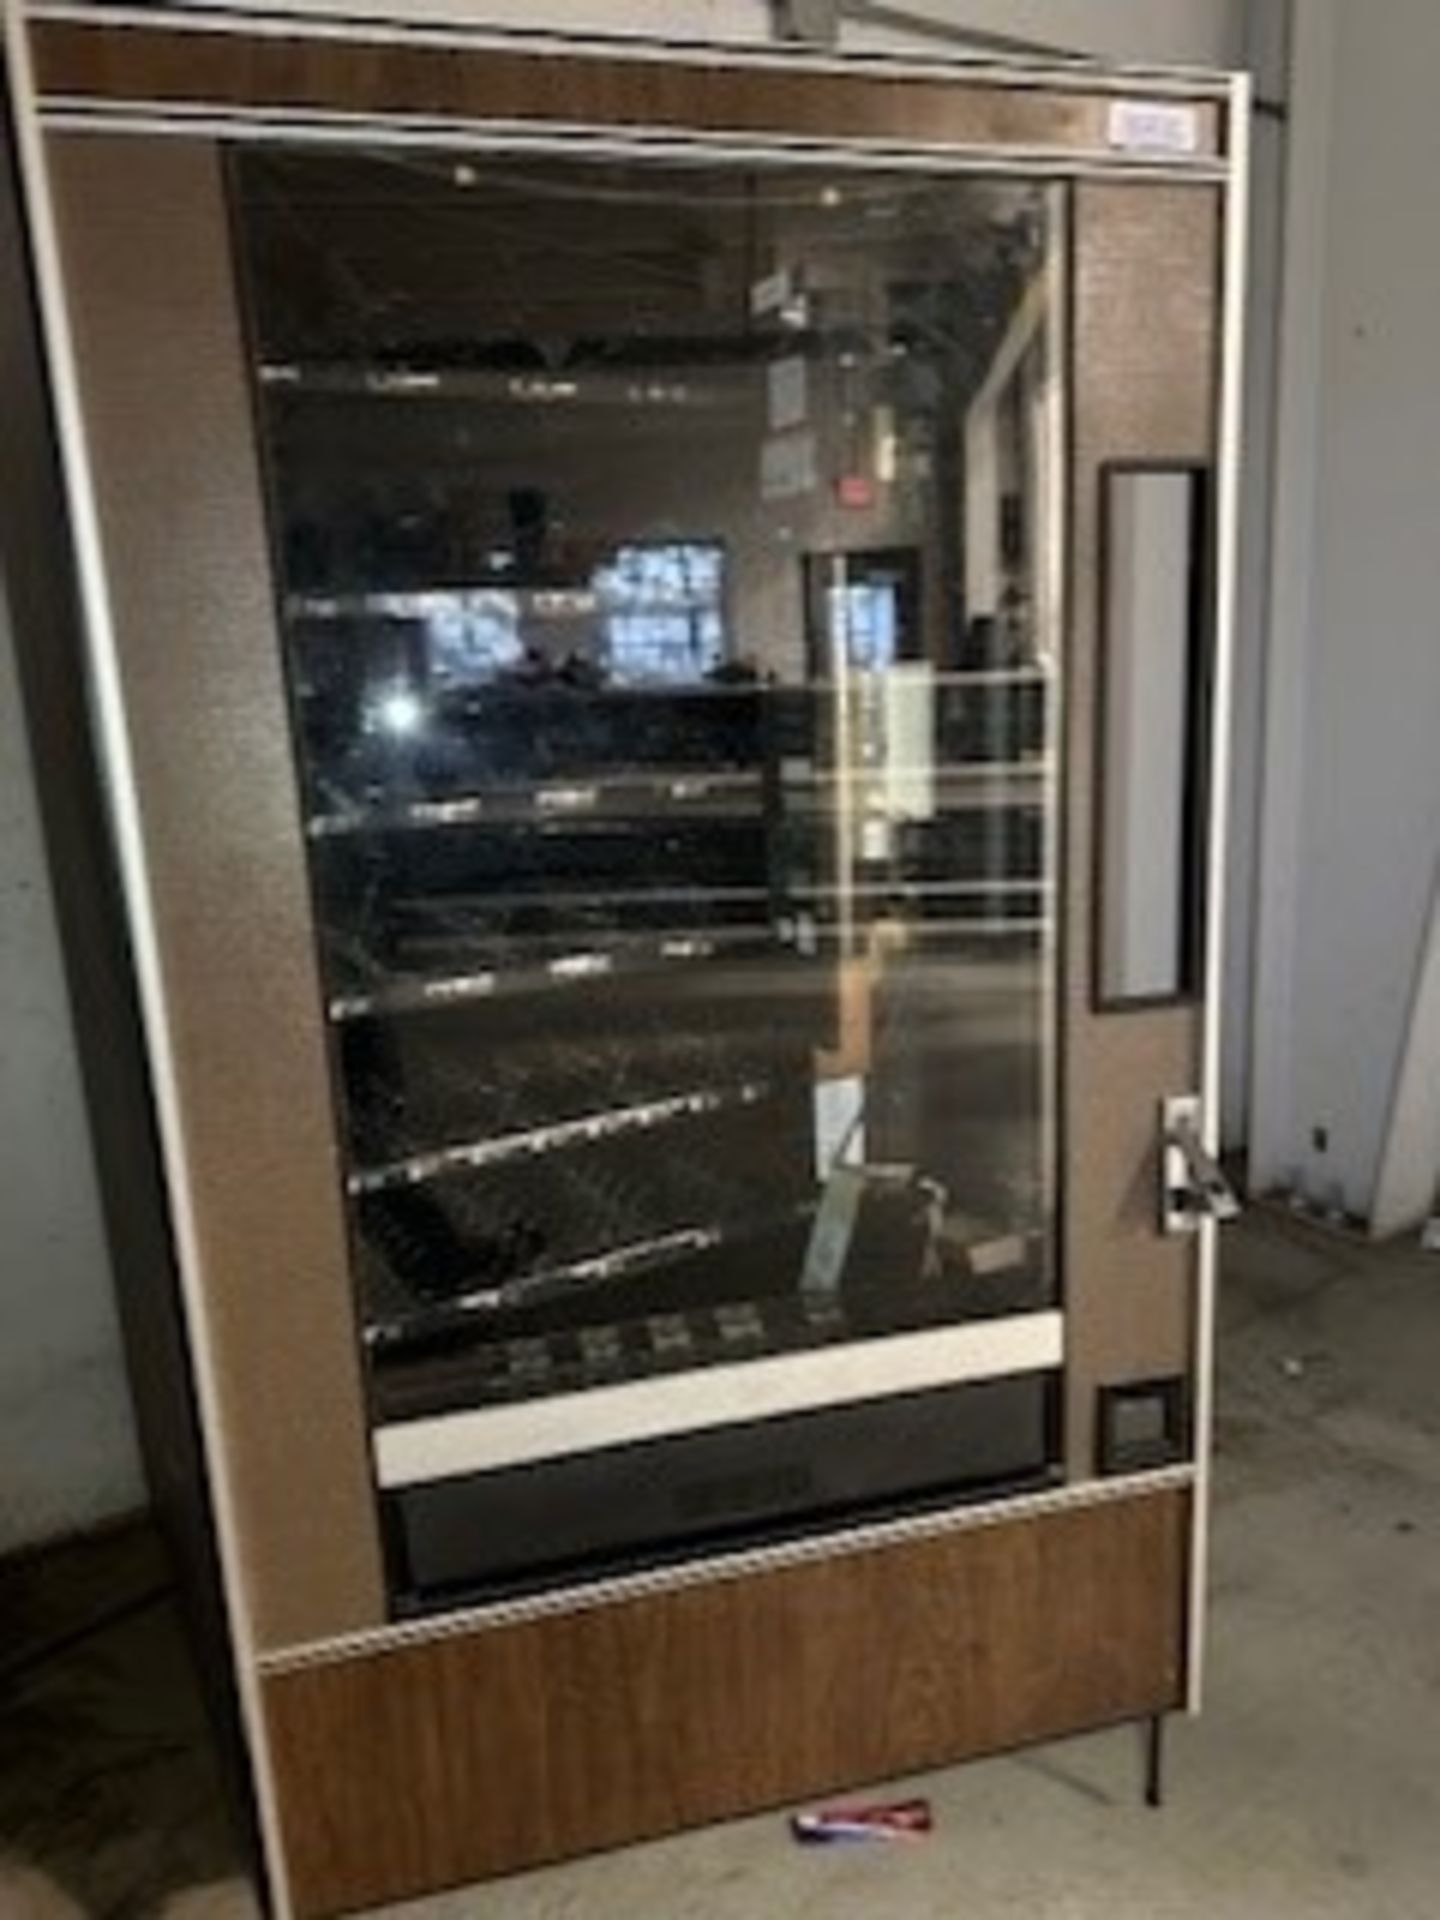 (Located in Farmingdale, NJ) Snack Vending Machine, Model# 147, Serial# 14728622